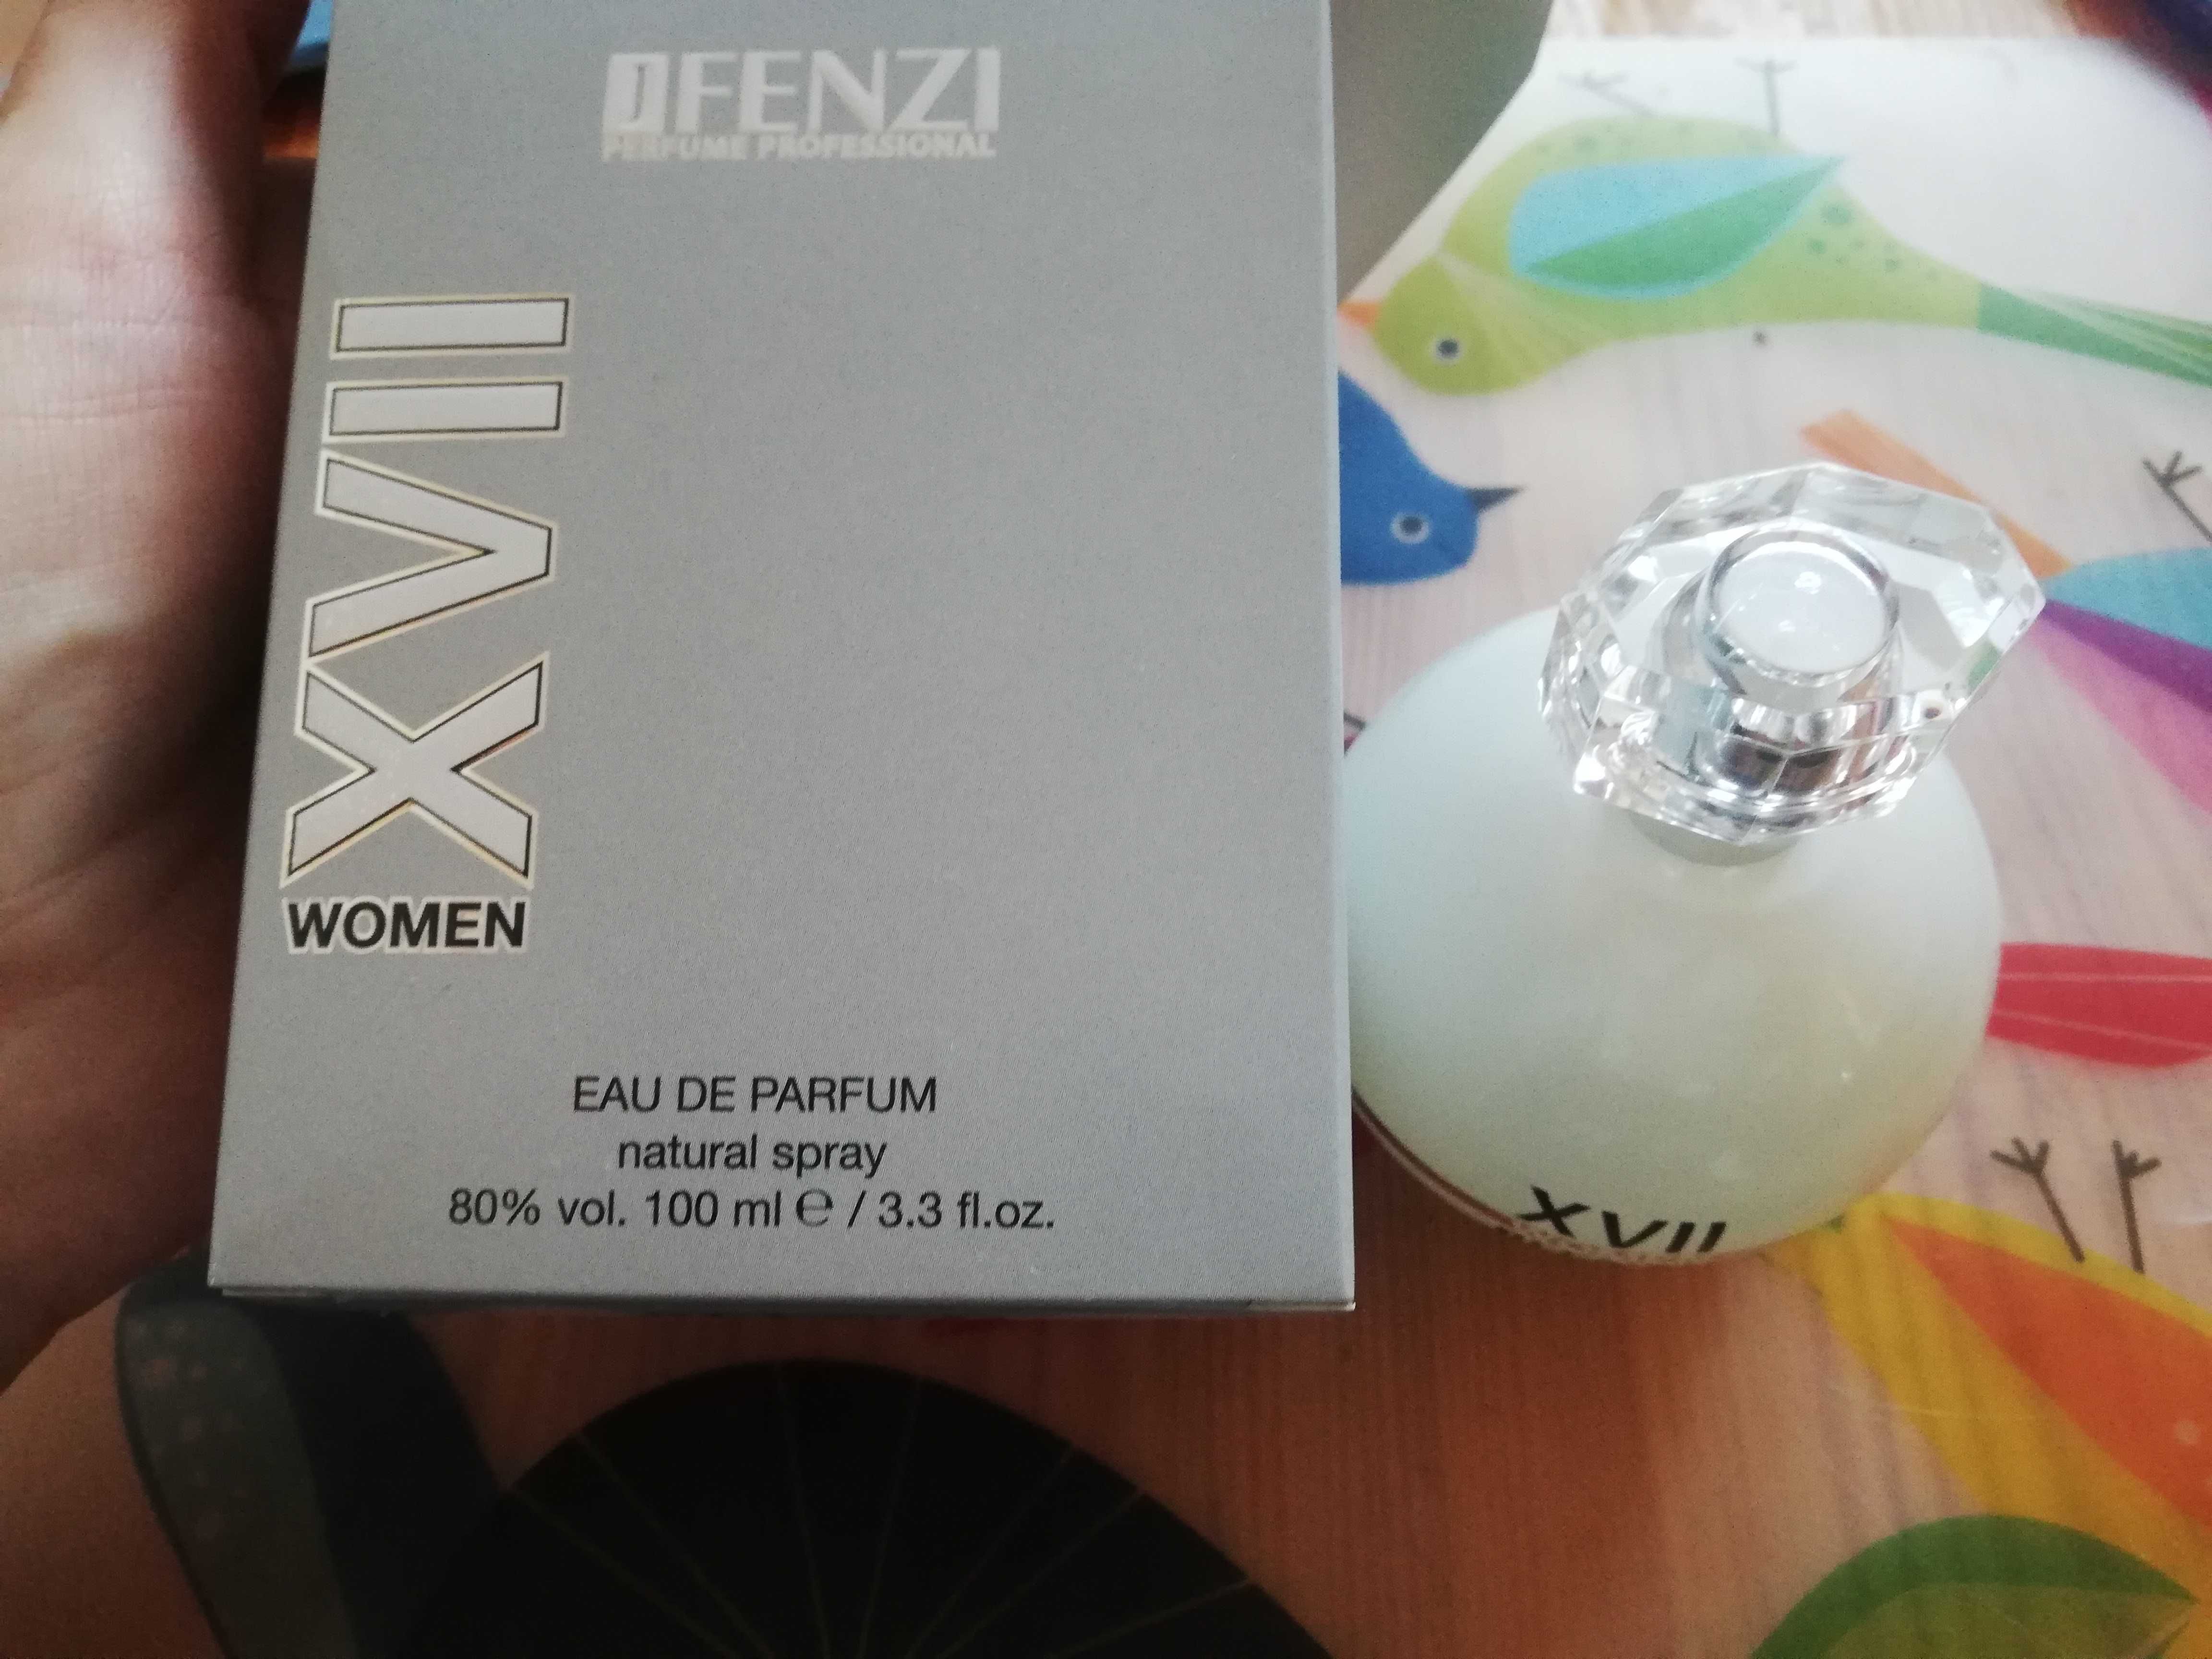 Perfumy J Fenzi XVII odpowiednik 212